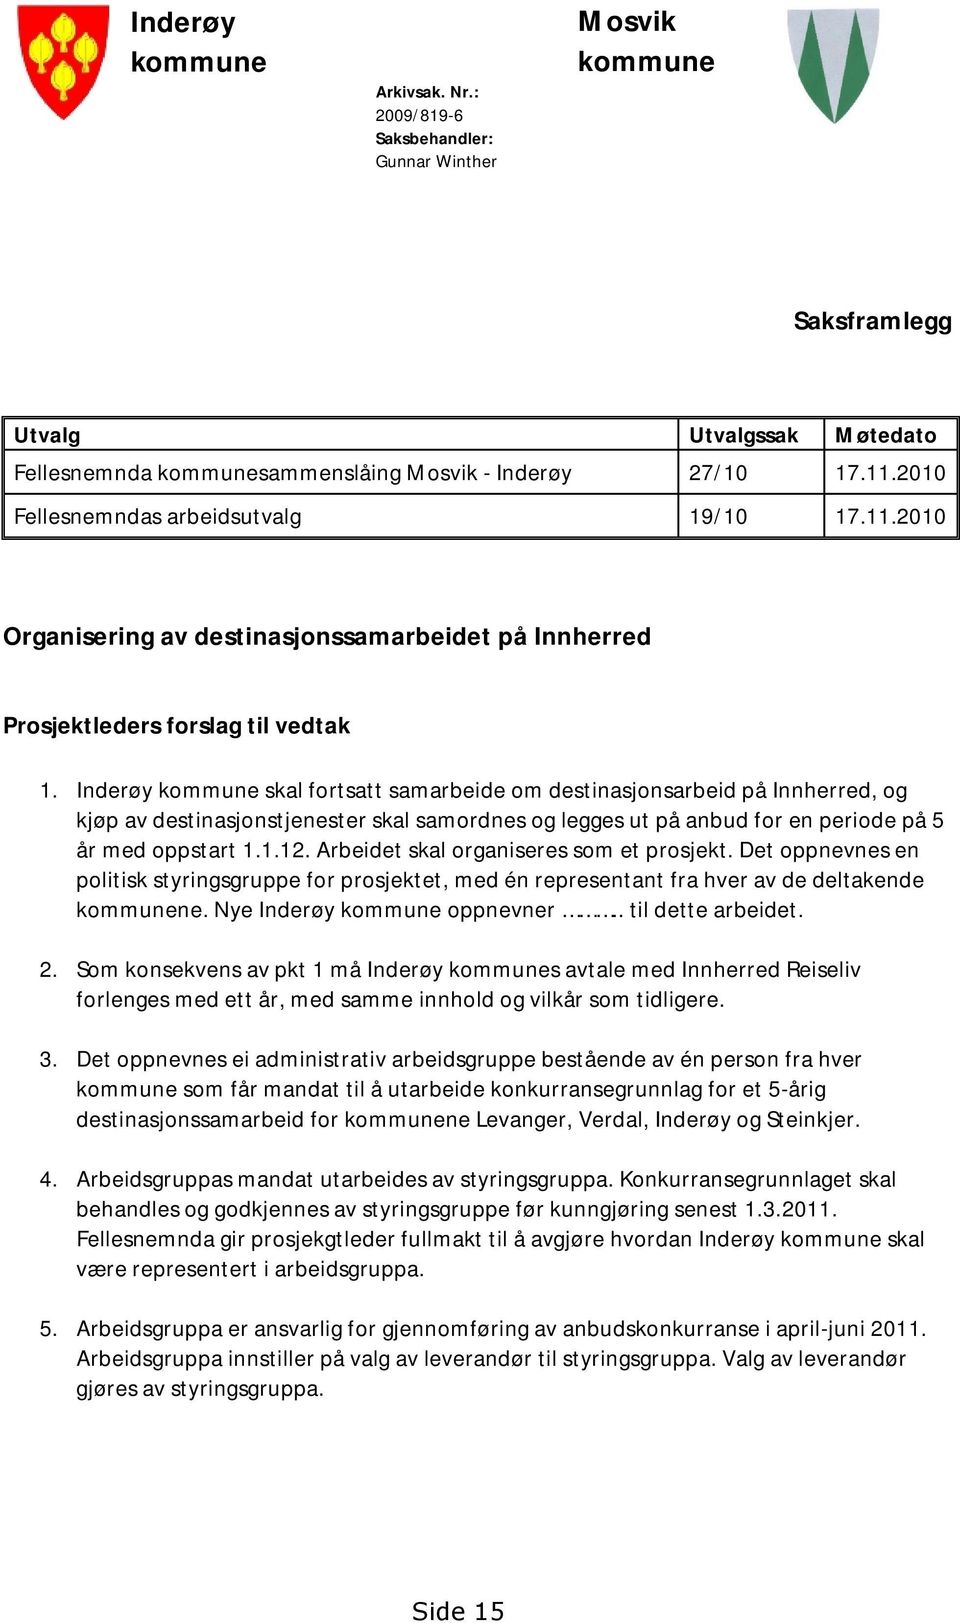 Inderøy kommune skal fortsatt samarbeide om destinasjonsarbeid på Innherred, og kjøp av destinasjonstjenester skal samordnes og legges ut på anbud for en periode på 5 år med oppstart 1.1.12.